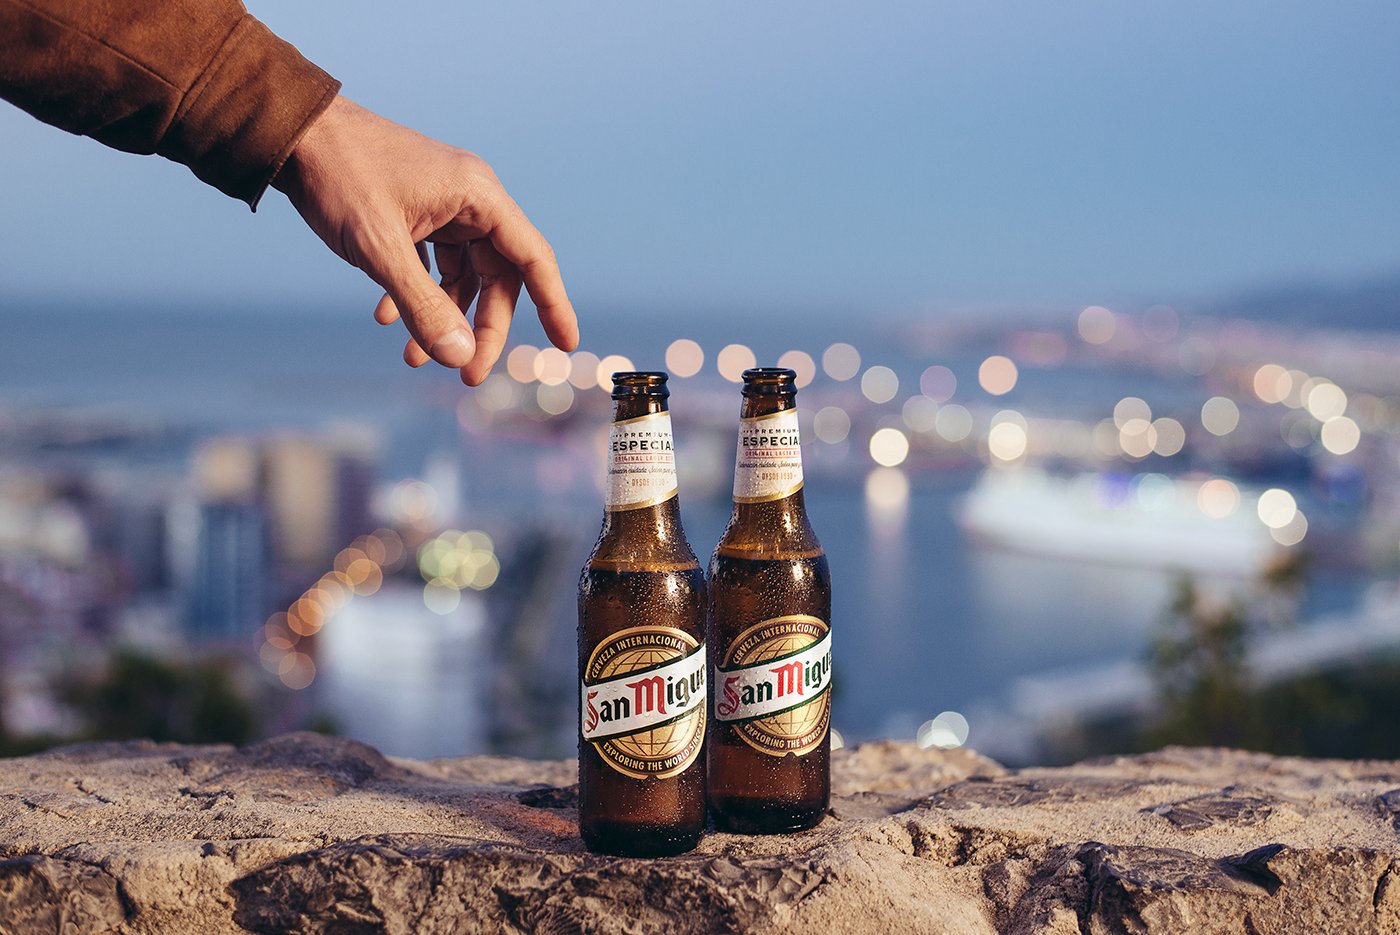 promo publicidad Campaña publicitario cerveza sanmiguel beer Advertising Campaign andalucia malaga